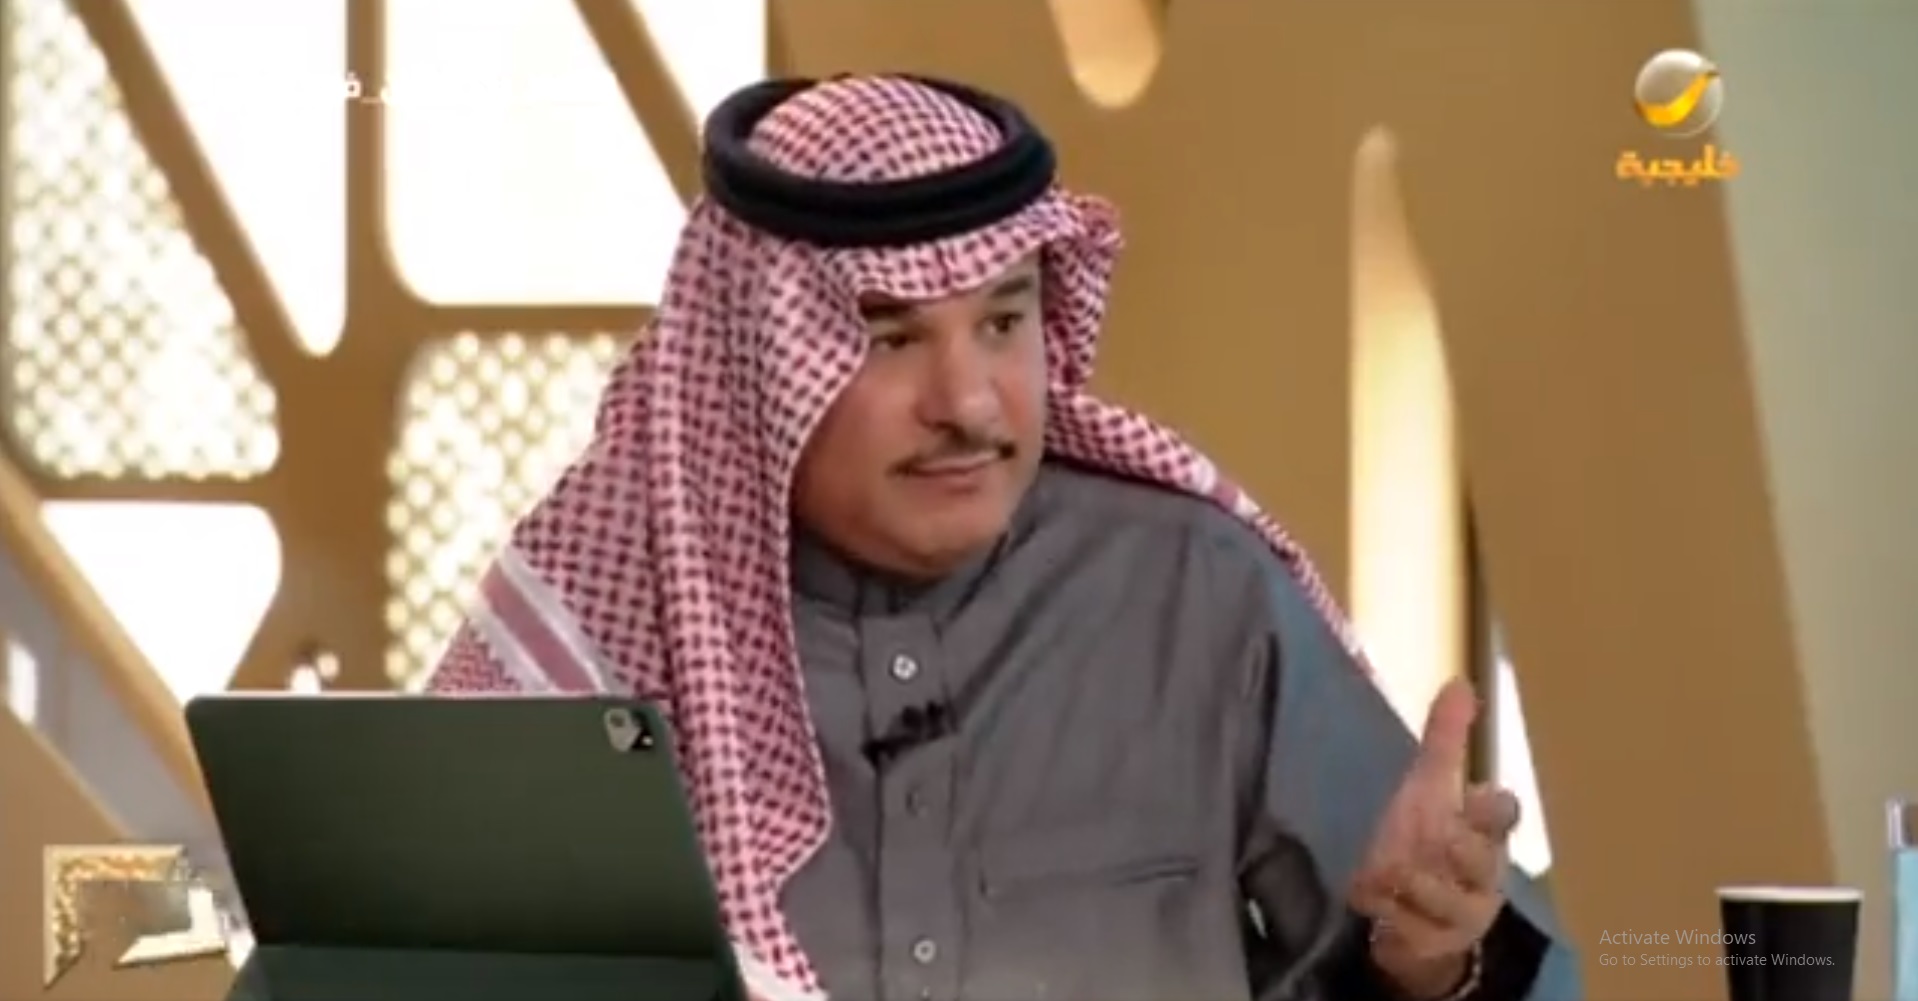 فهد بن حثلين يكشف أنواع الإبل التي يمتلكها الأمير محمد بن سلمان